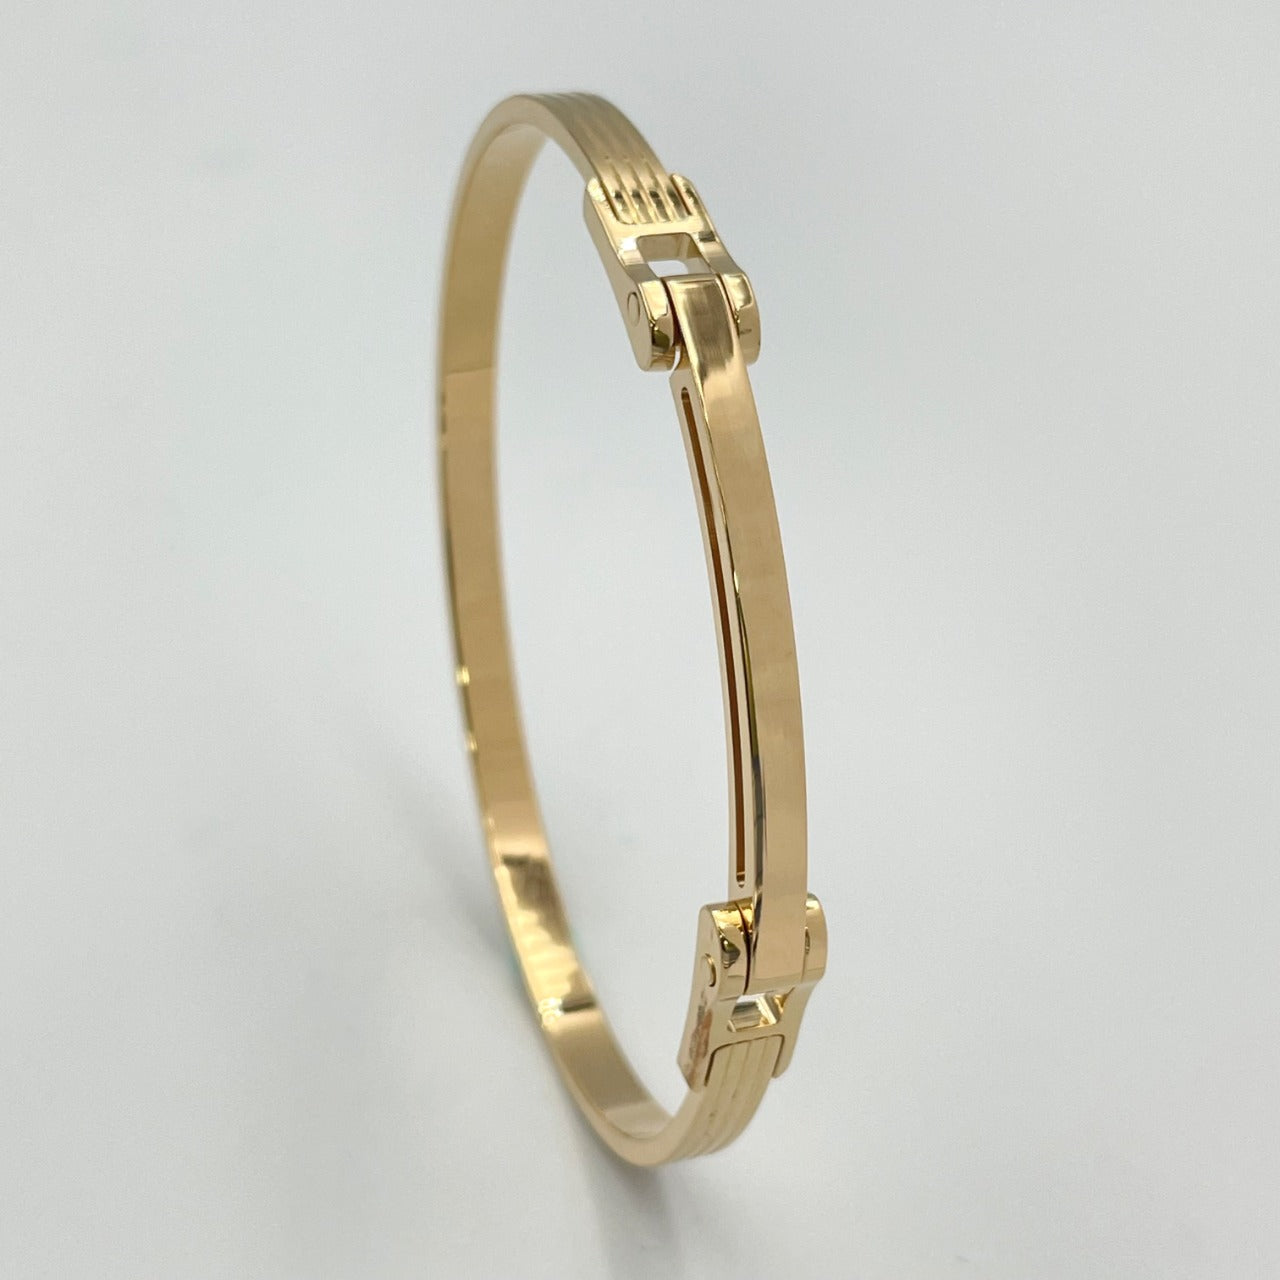 Bracelet MOTION-H 4mm with hinge white gold 18k 750